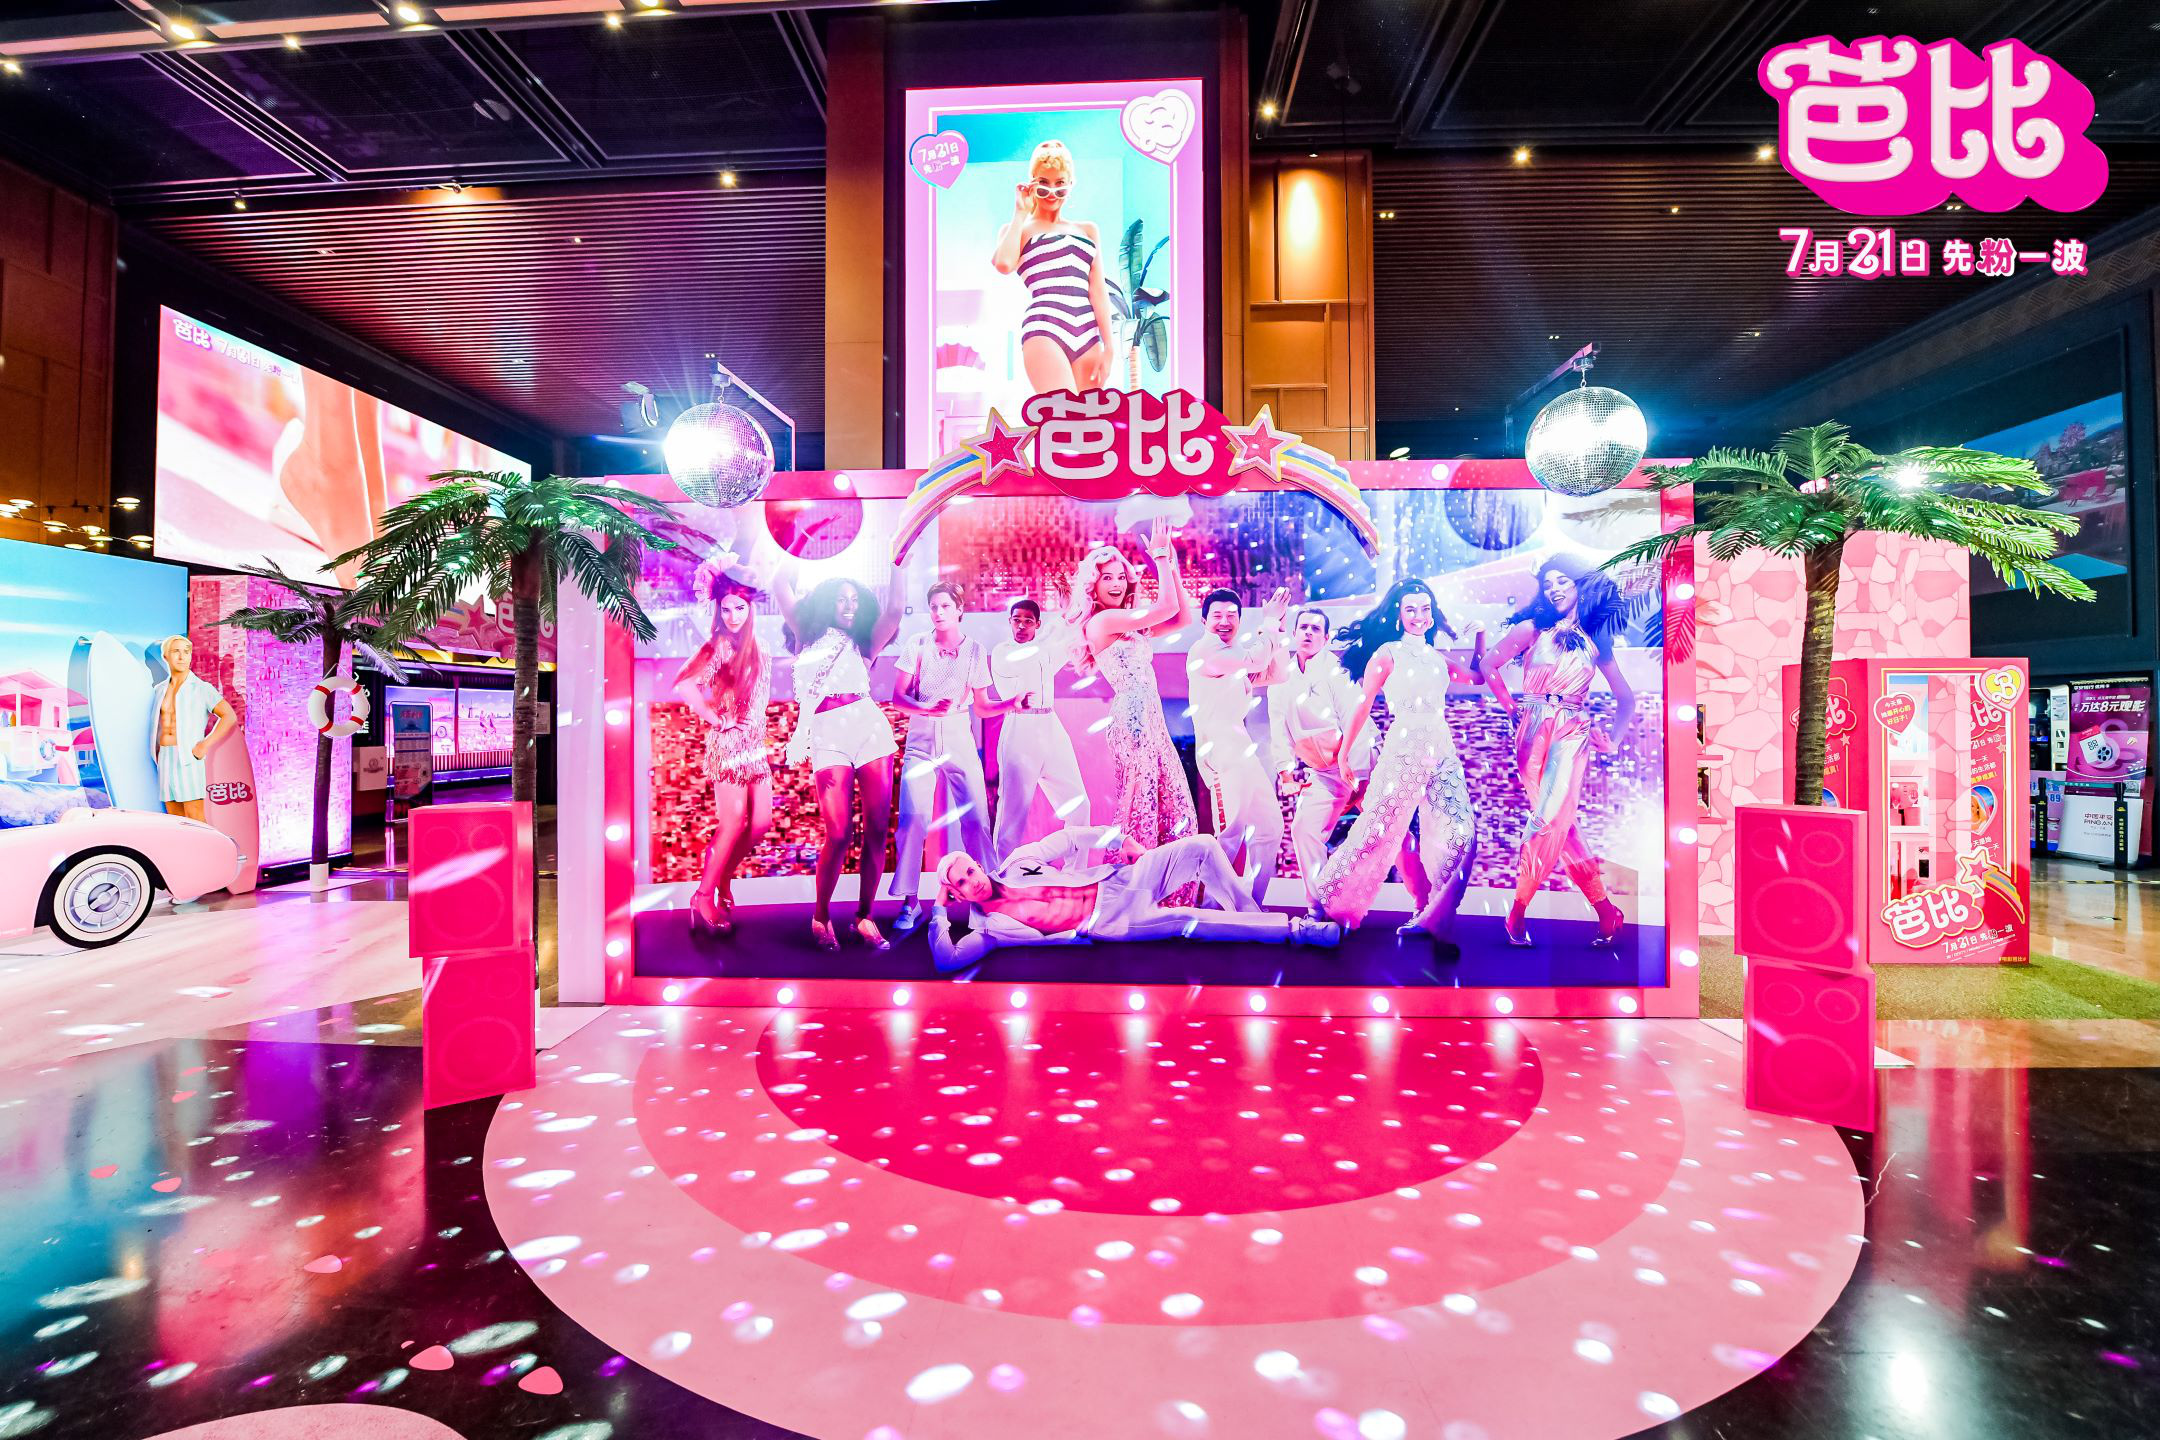 《芭比》中国首映现场 高能还原梦幻粉红芭比乐园